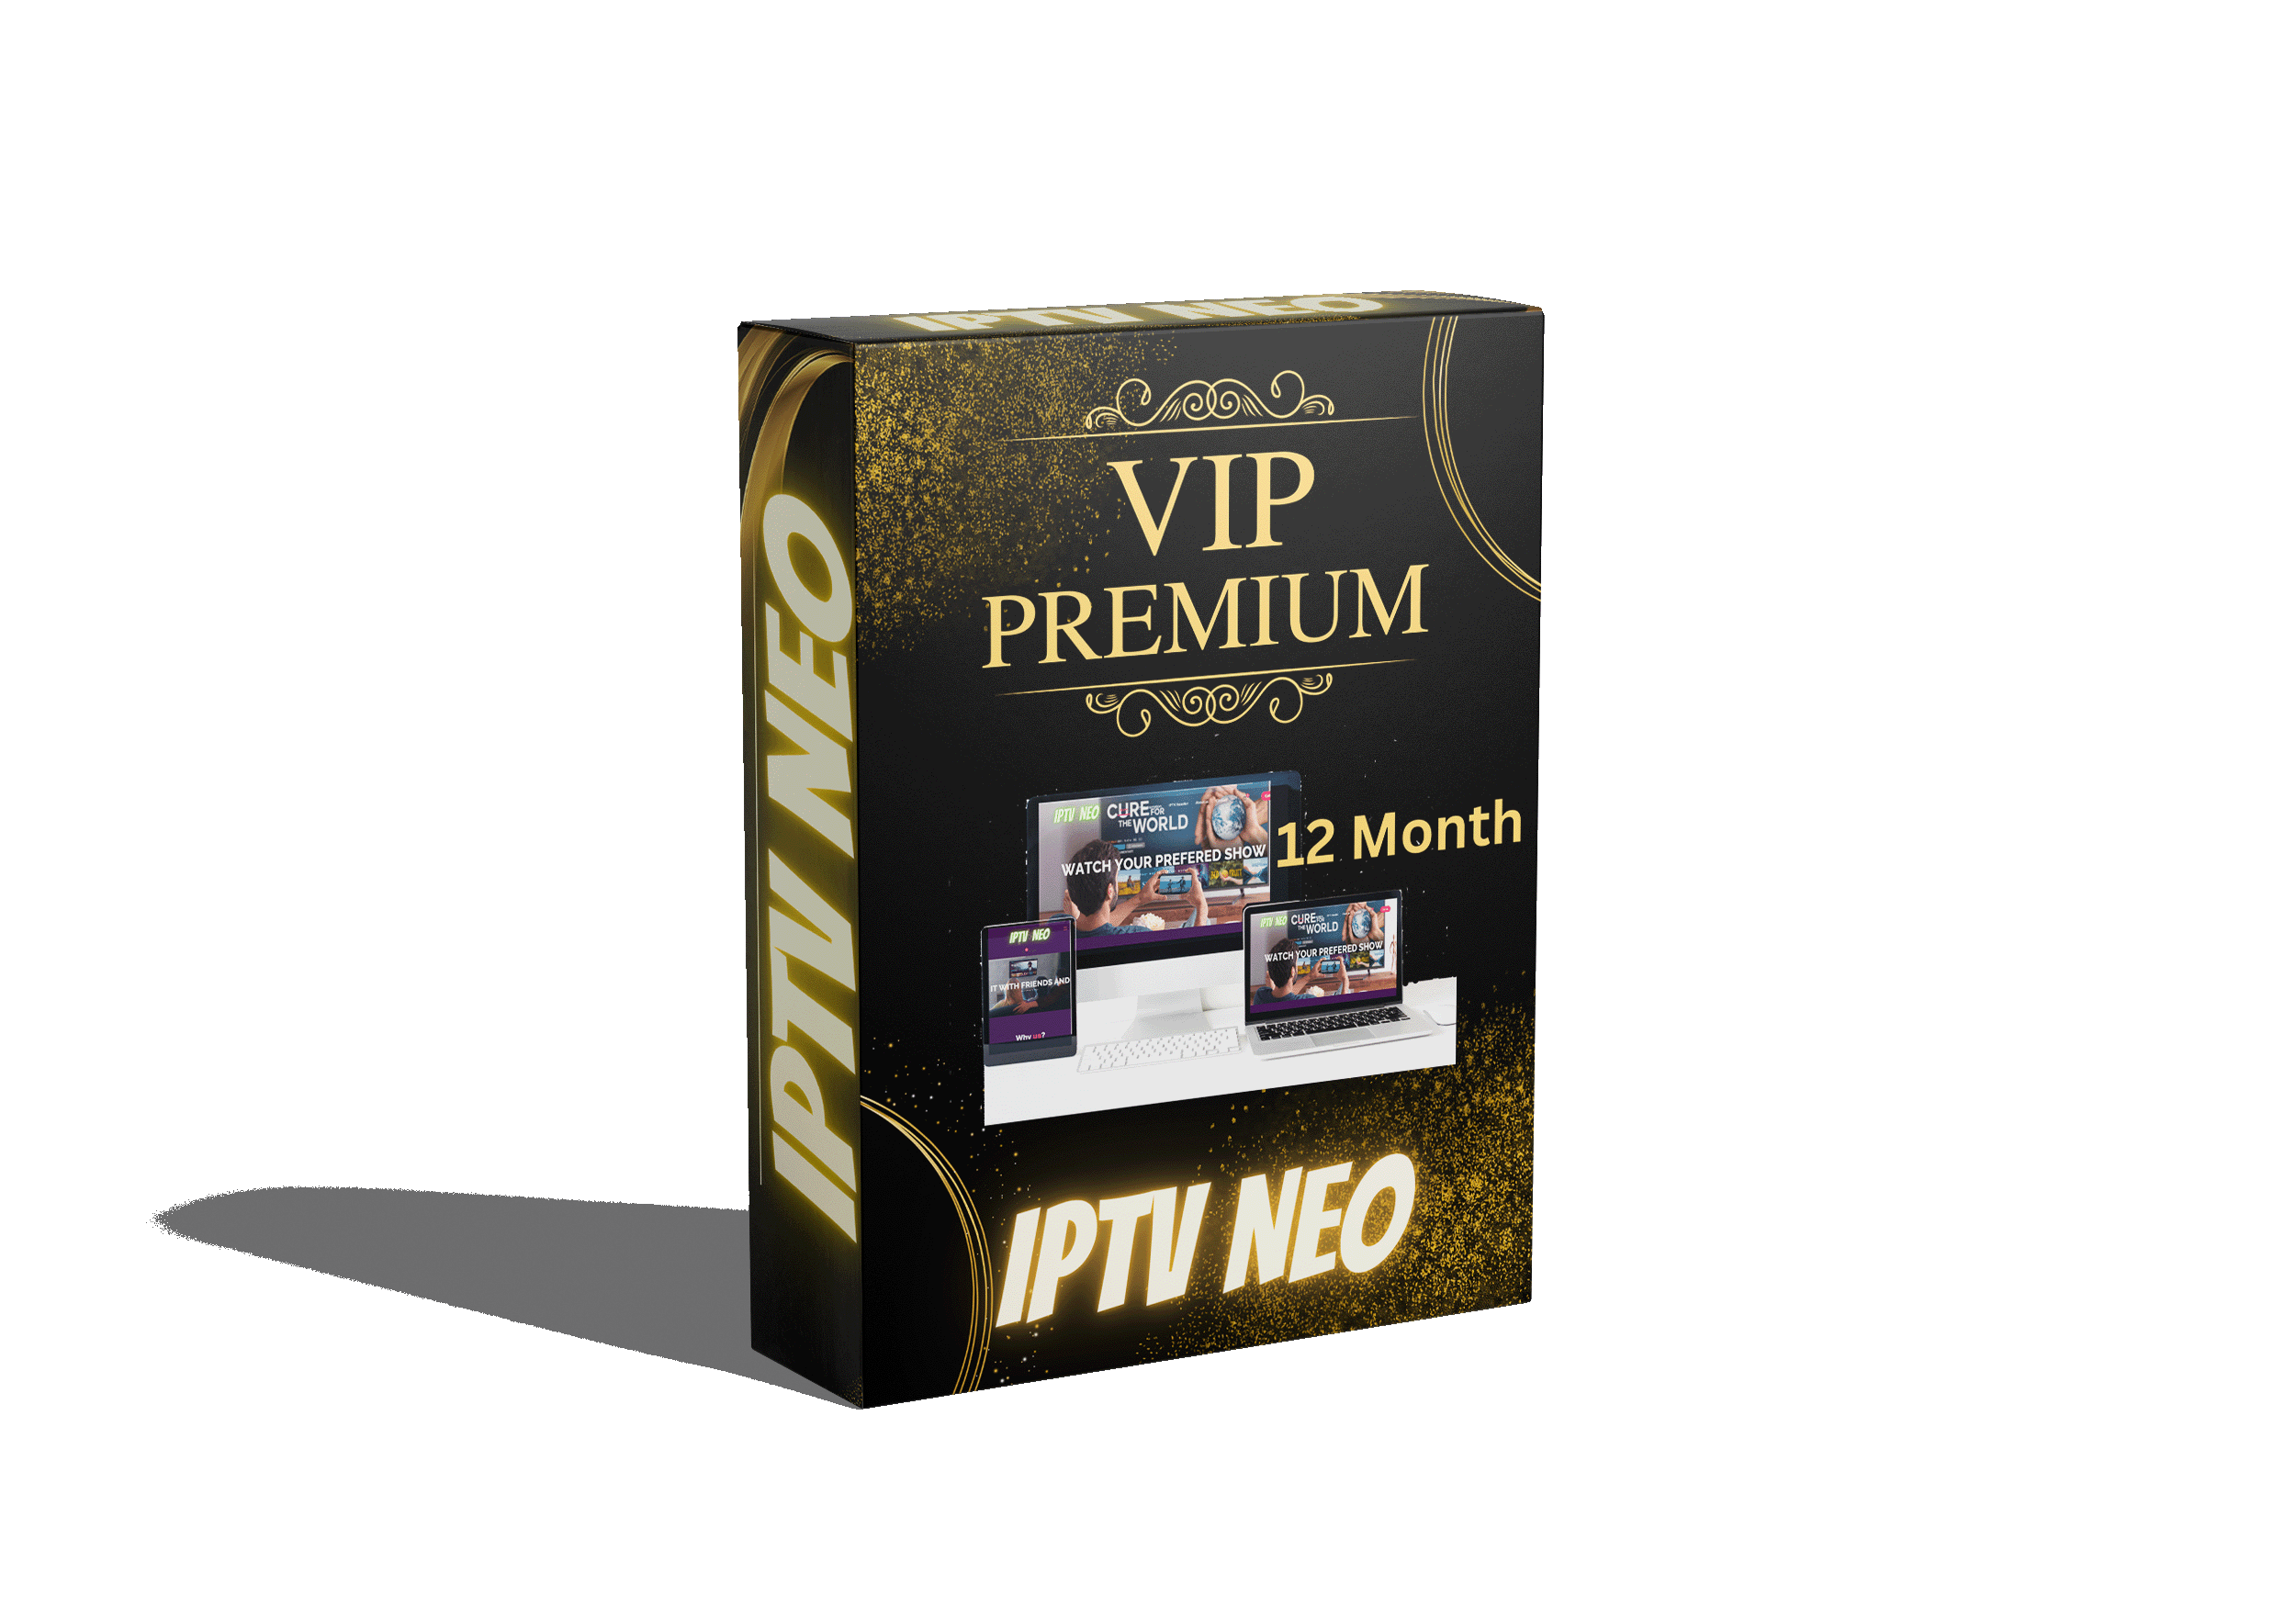 Abonnement Premium 12 mois - NEOSTEA IPTV PREMIUM PRO